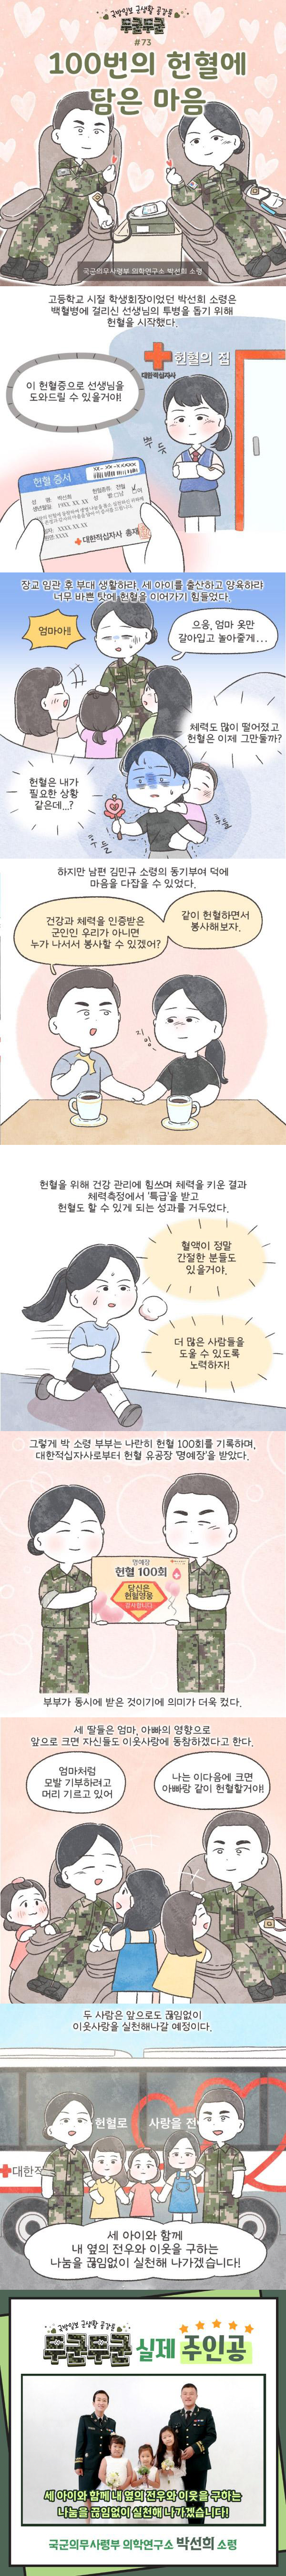 의학연구소 박선희 소령 헌혈 100회 미담